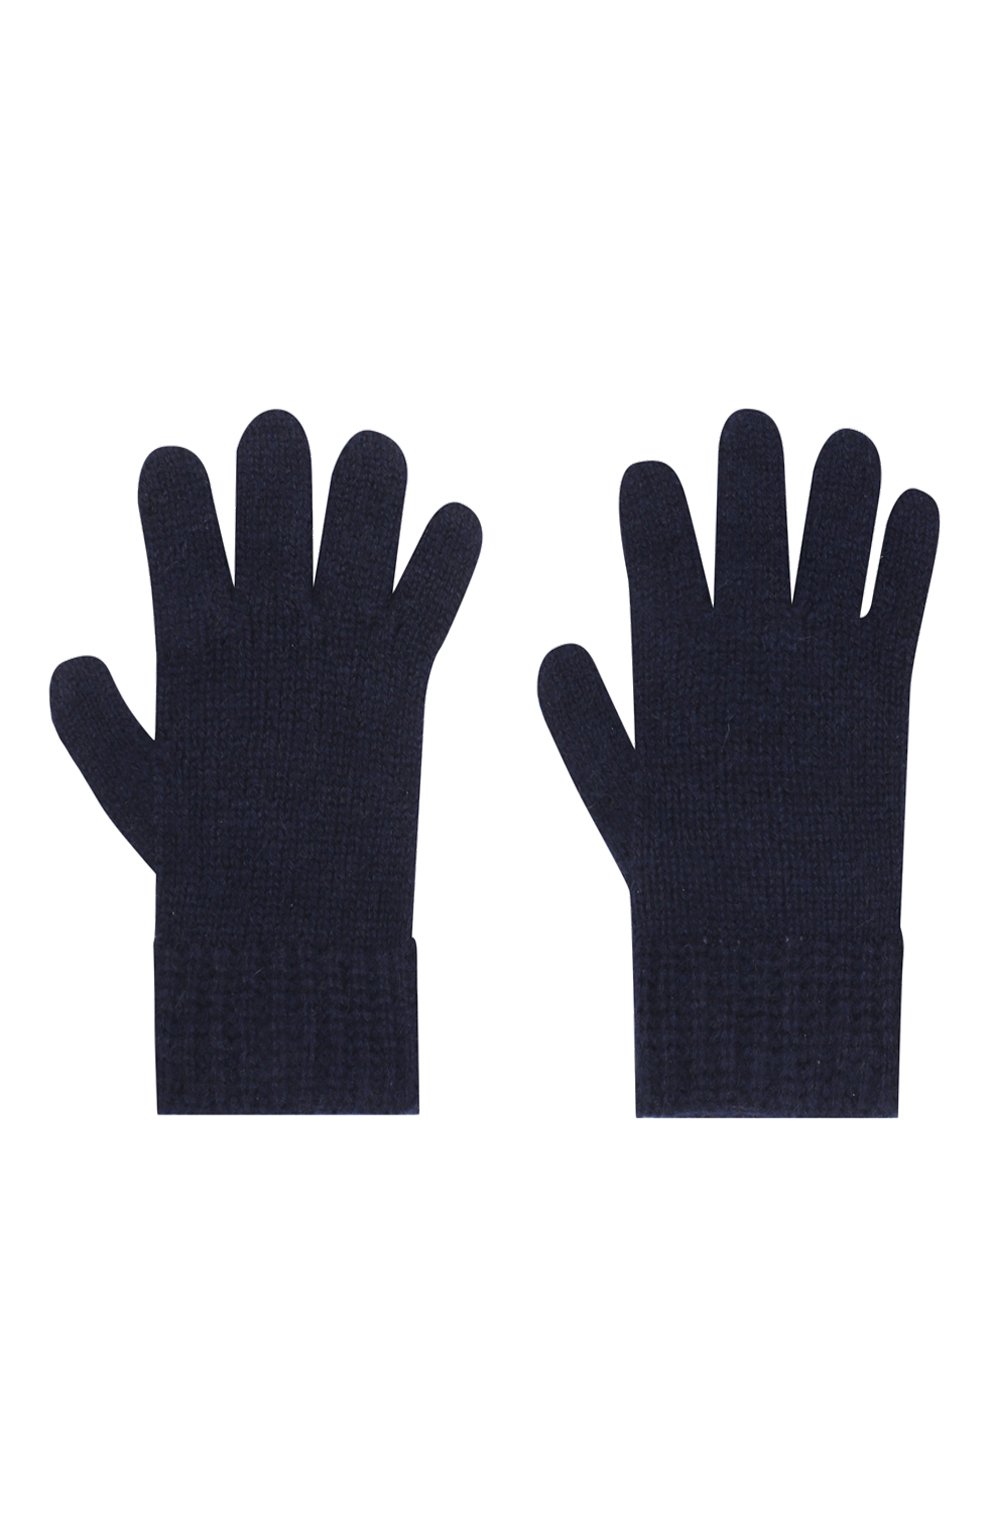 Детские кашемировые перчатки GIORGETTI CASHMERE темно-синего цвета, арт. MB1698/RASATI/8A | Фото 2 (Материал: Текстиль, Кашемир, Шерсть)